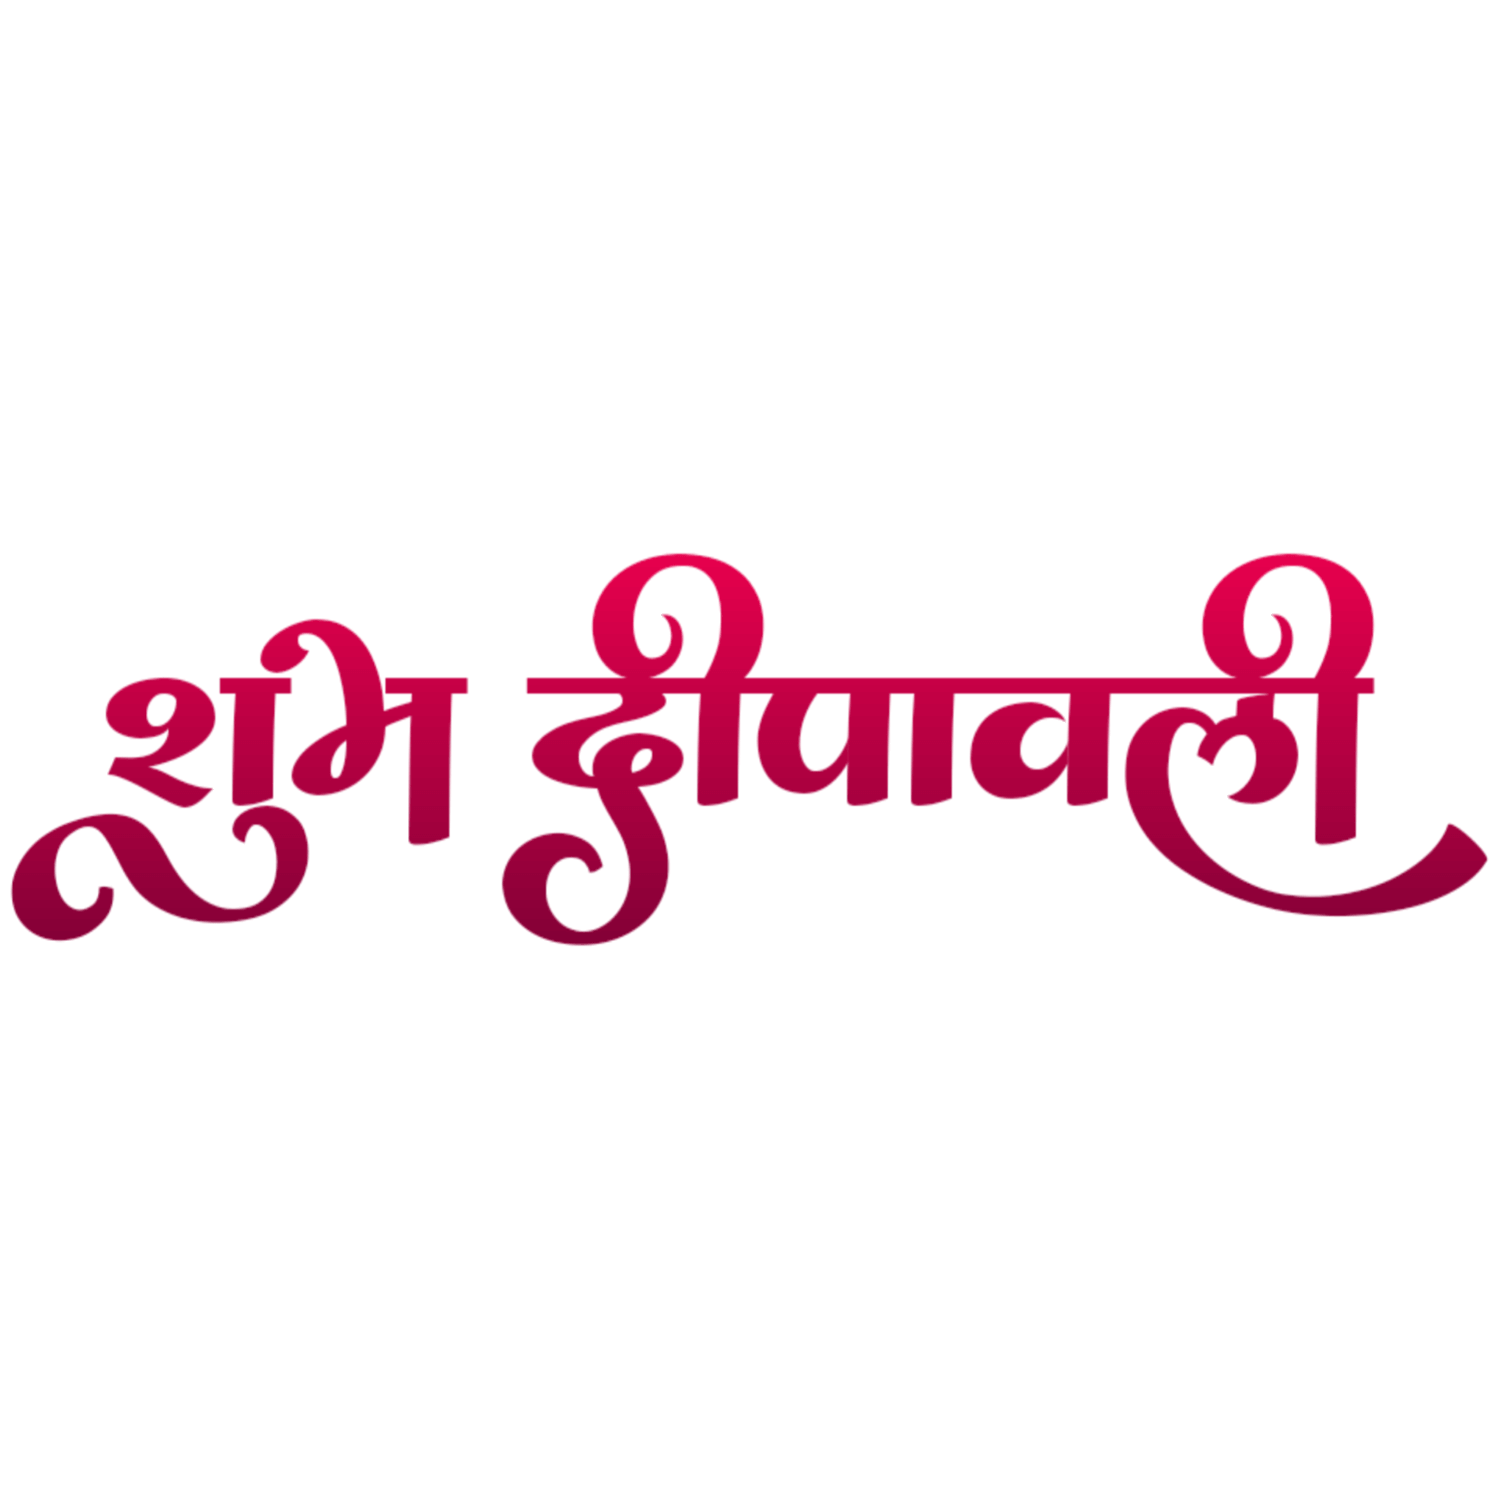 Shubh Dipawali Hindi Text Transparent Image